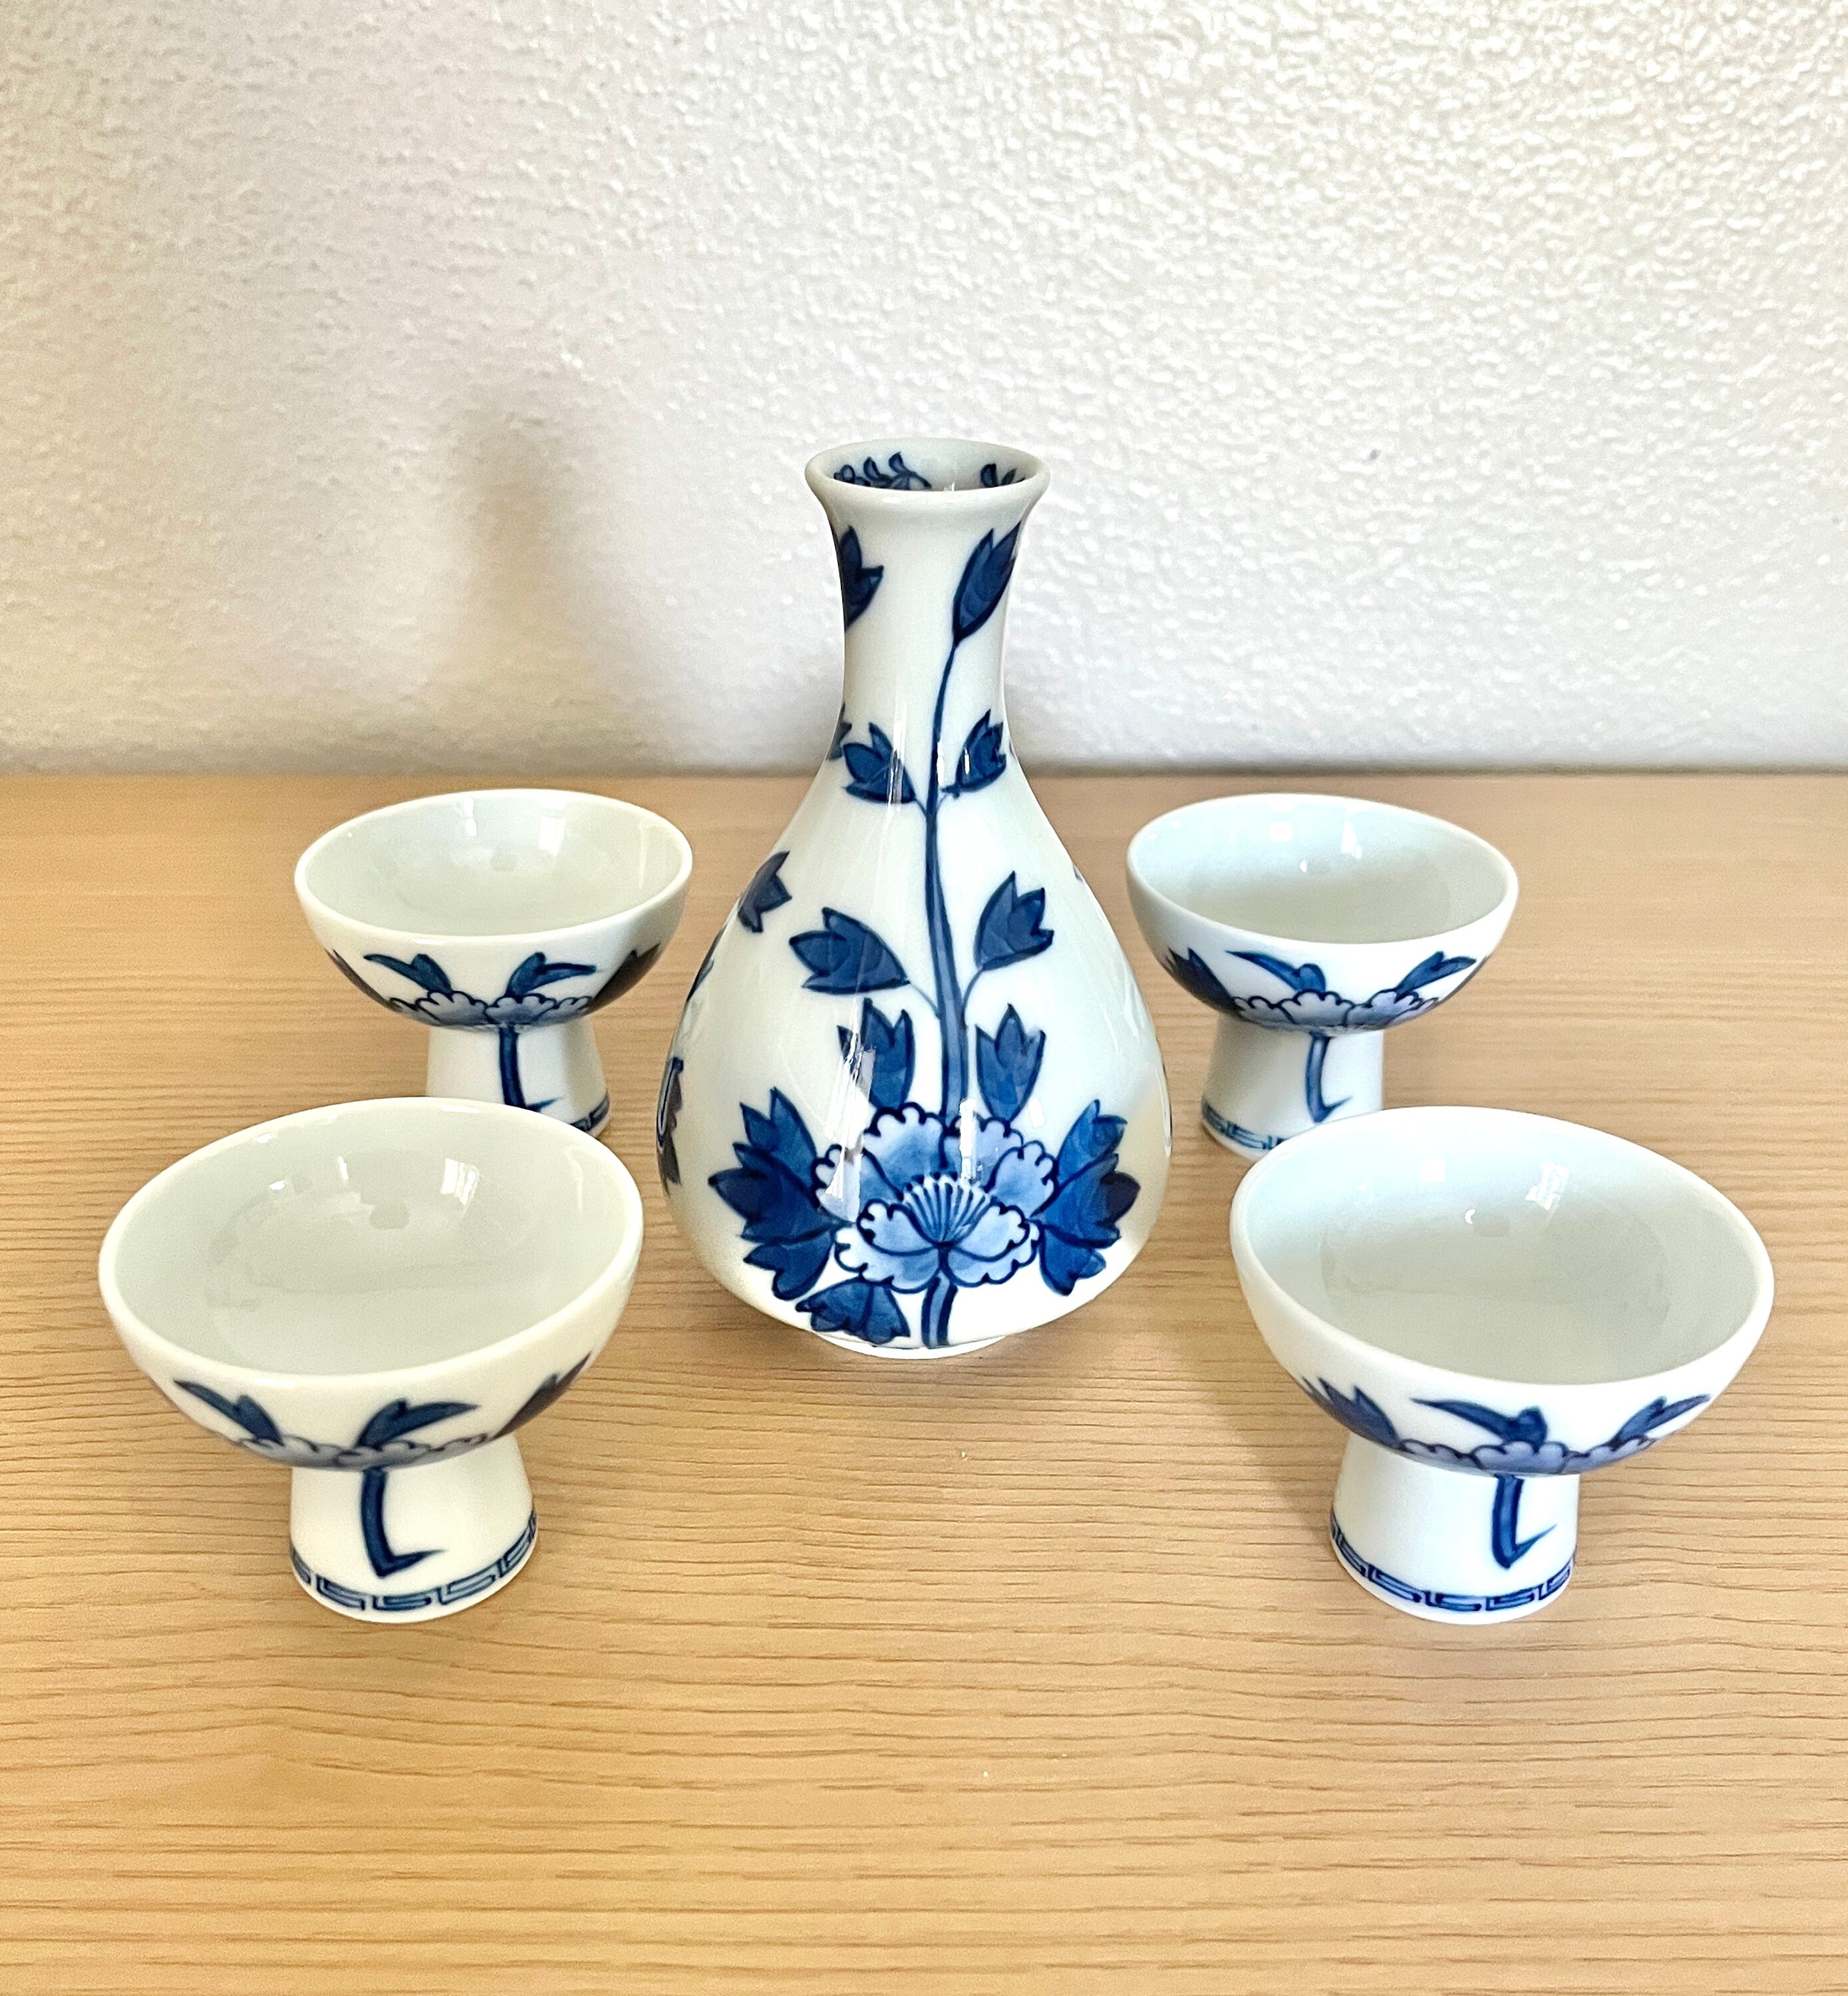 Blue Winter Flower Japanese flower Porcelain Sake Set with 4 Cups 1 Decanter/Bottle/Carafe 